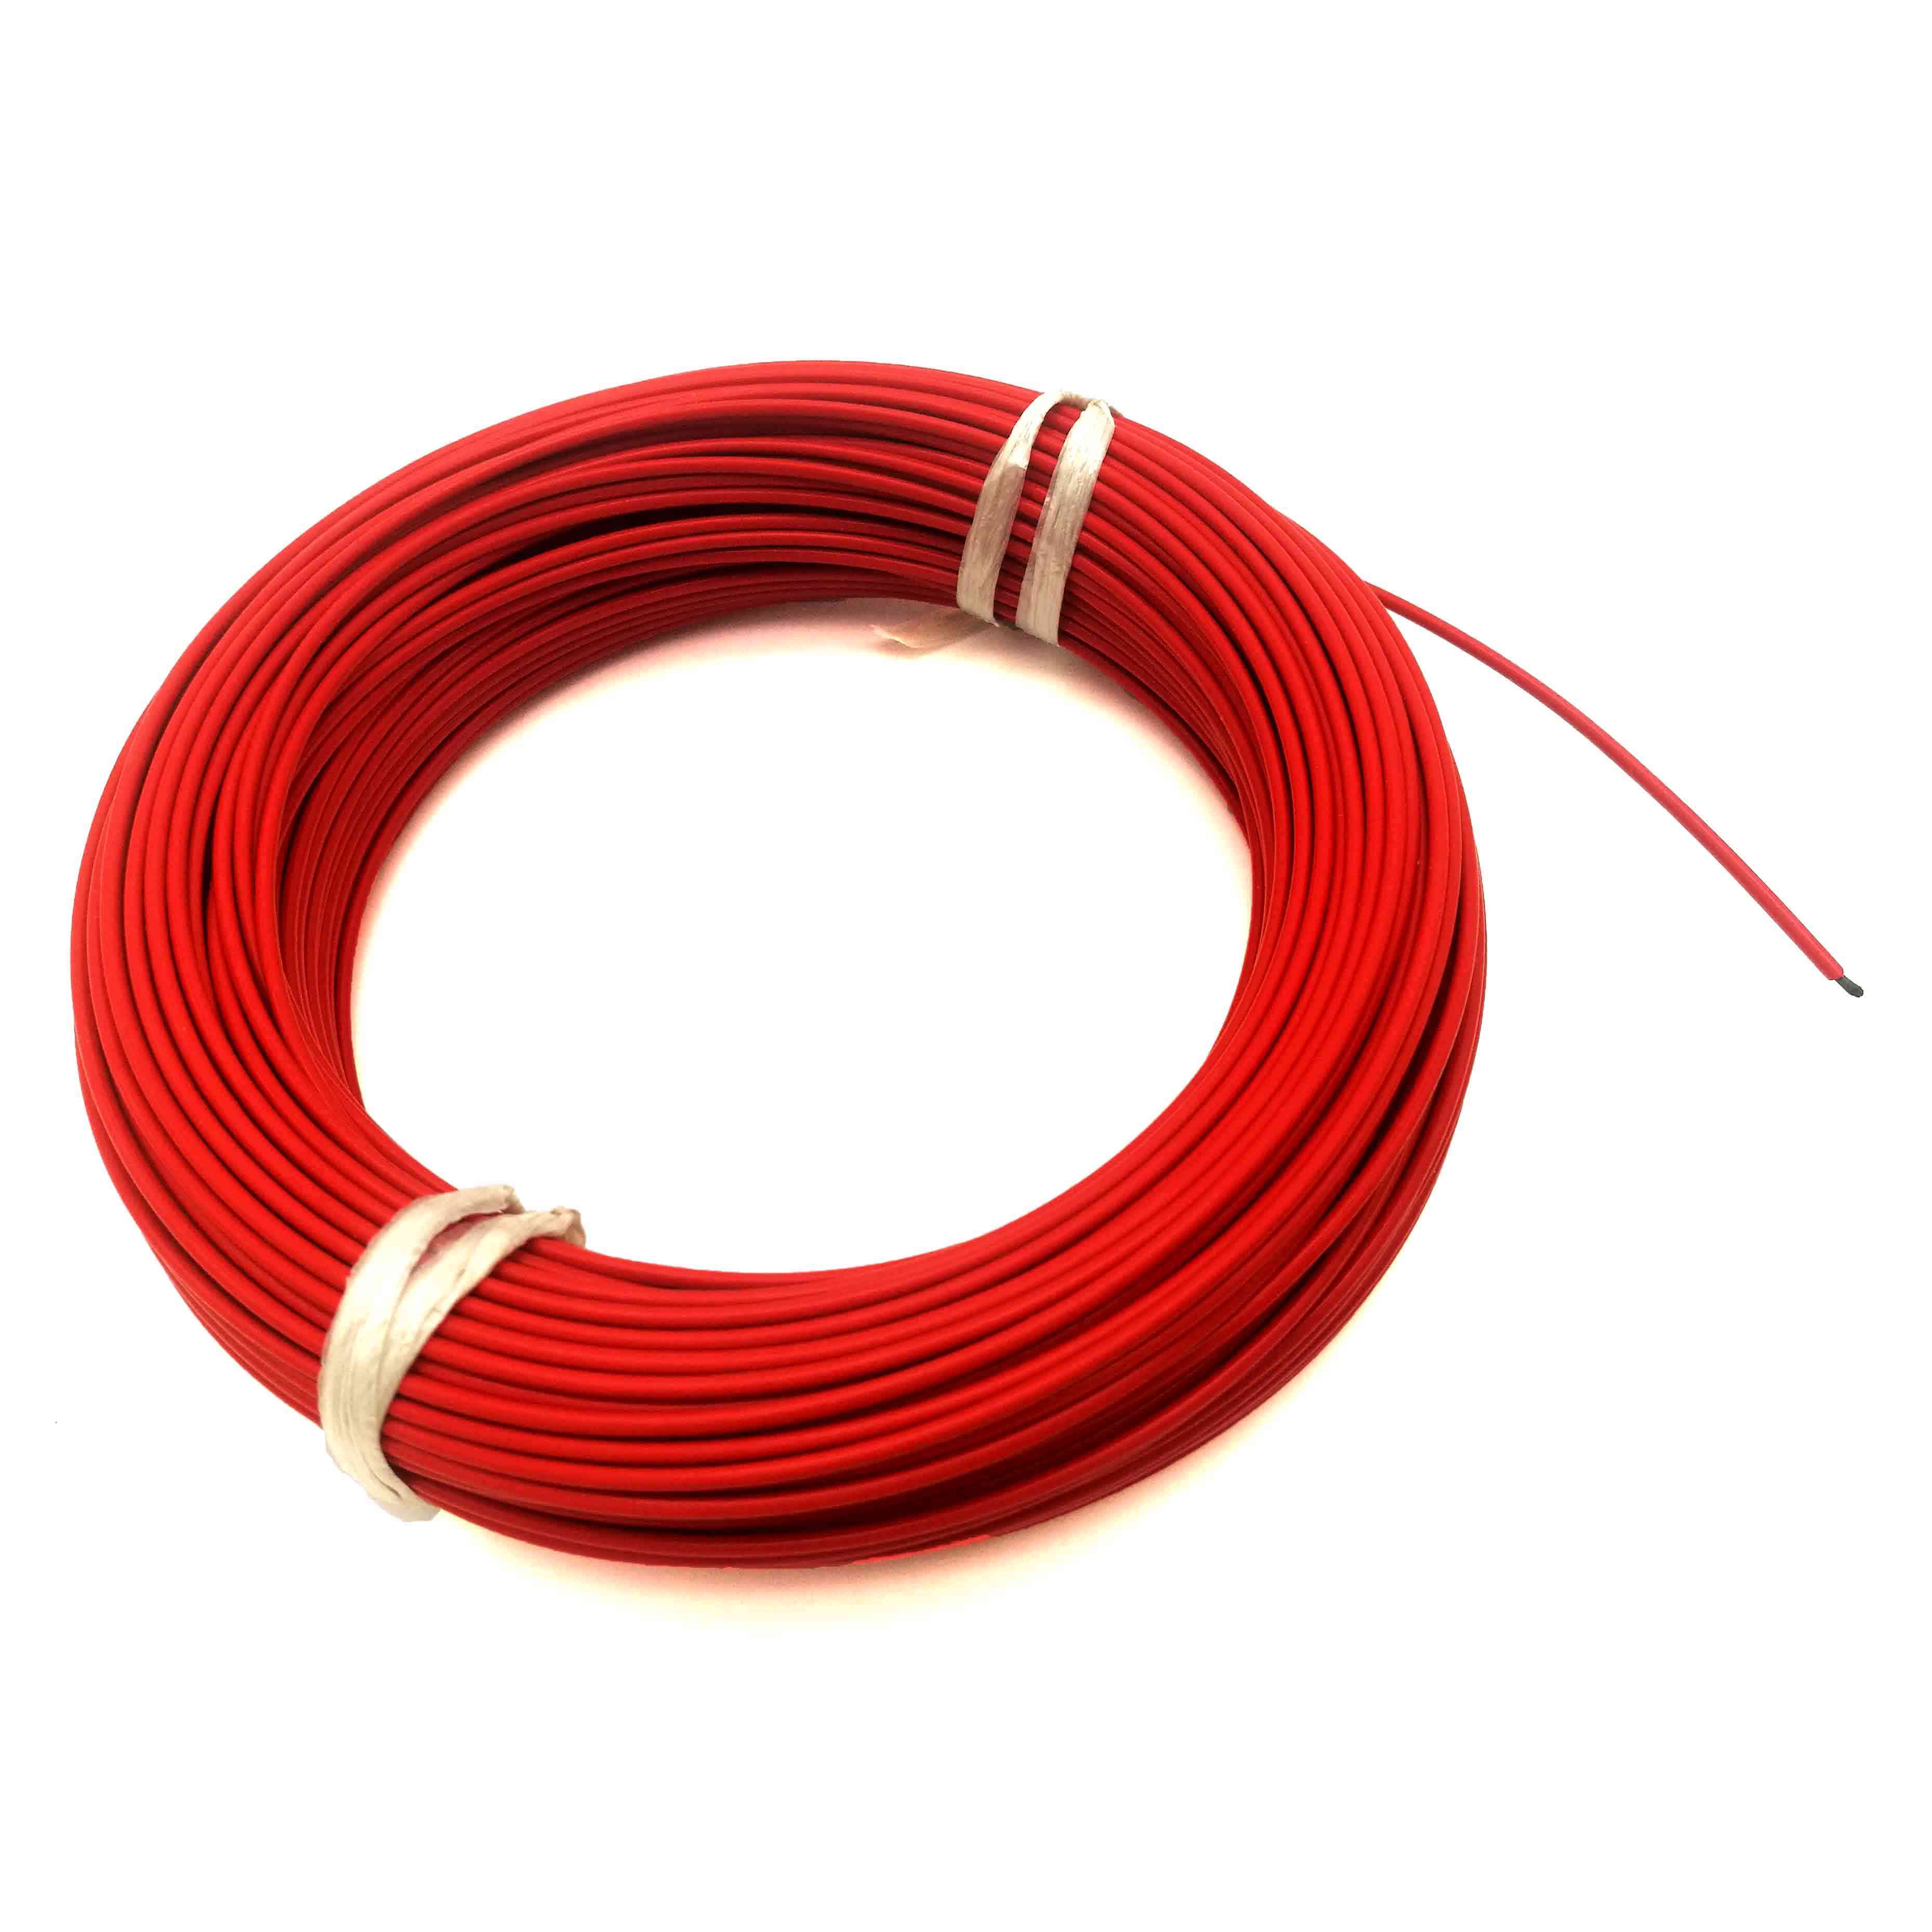 10m / 15m-33ohm, 12k fluoroplastični električni grelni kabel